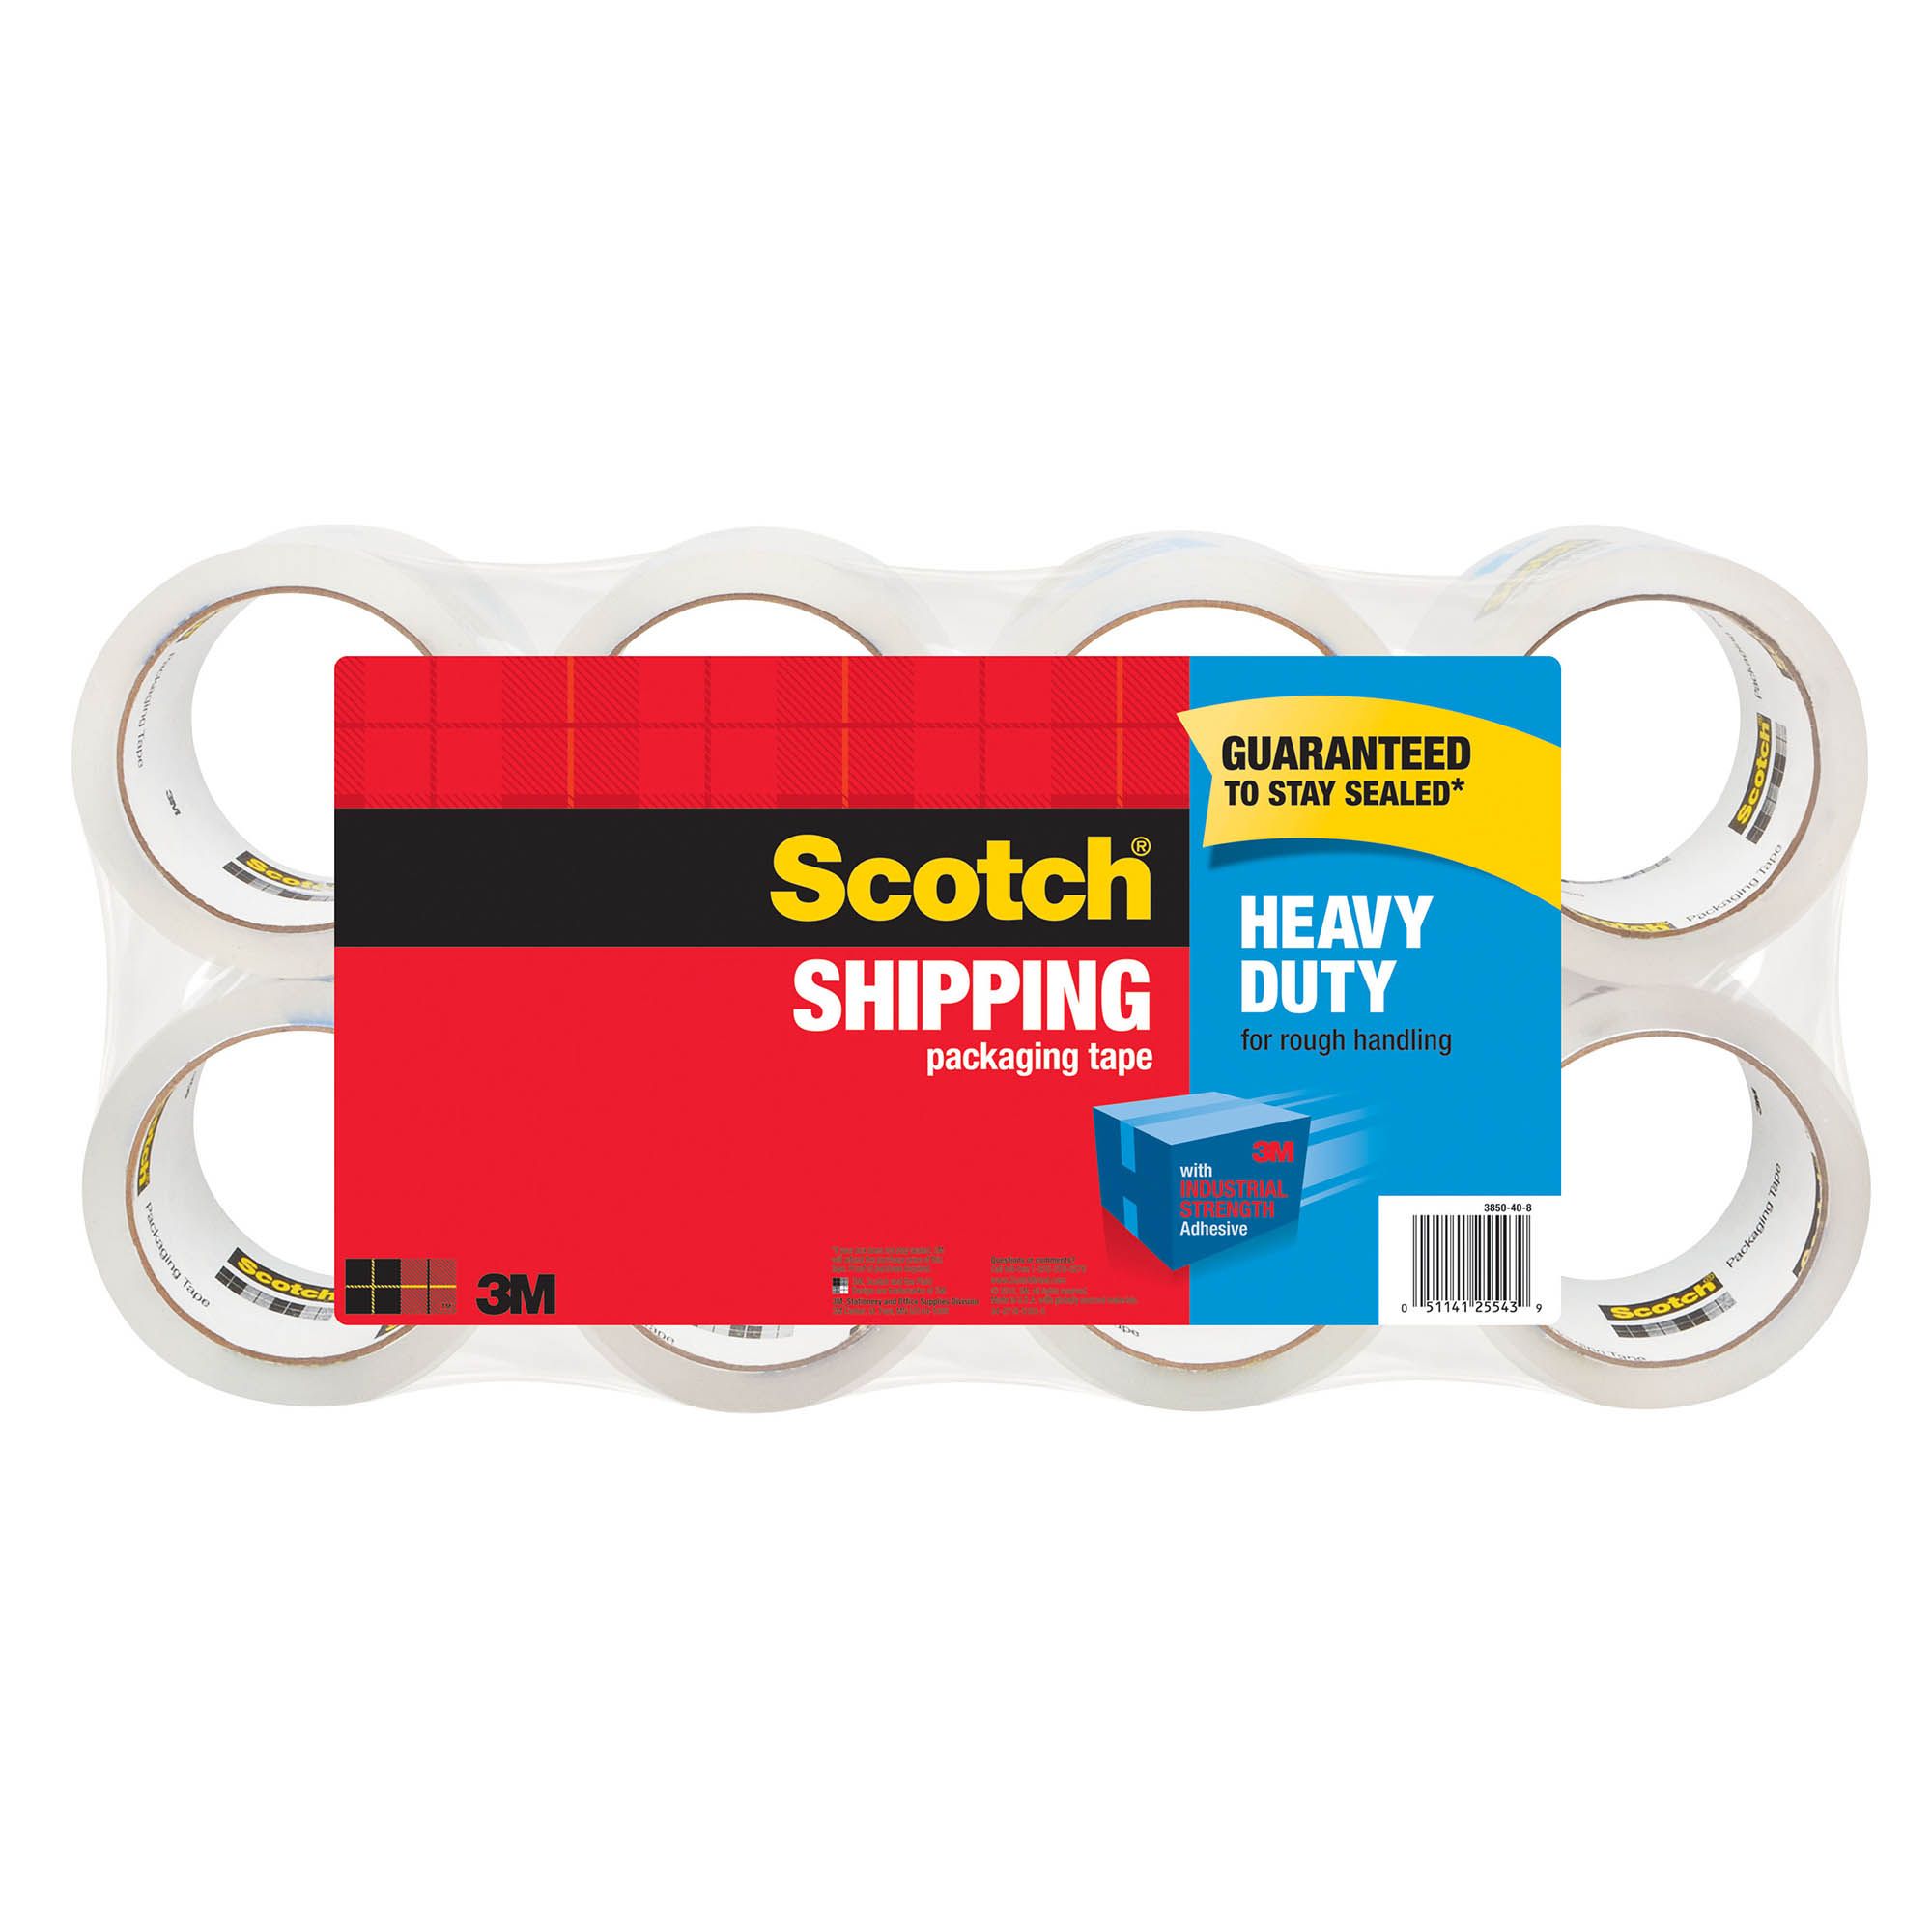 Scotch Heavy-Duty Tape Dispenser - Beige, 2-Roll